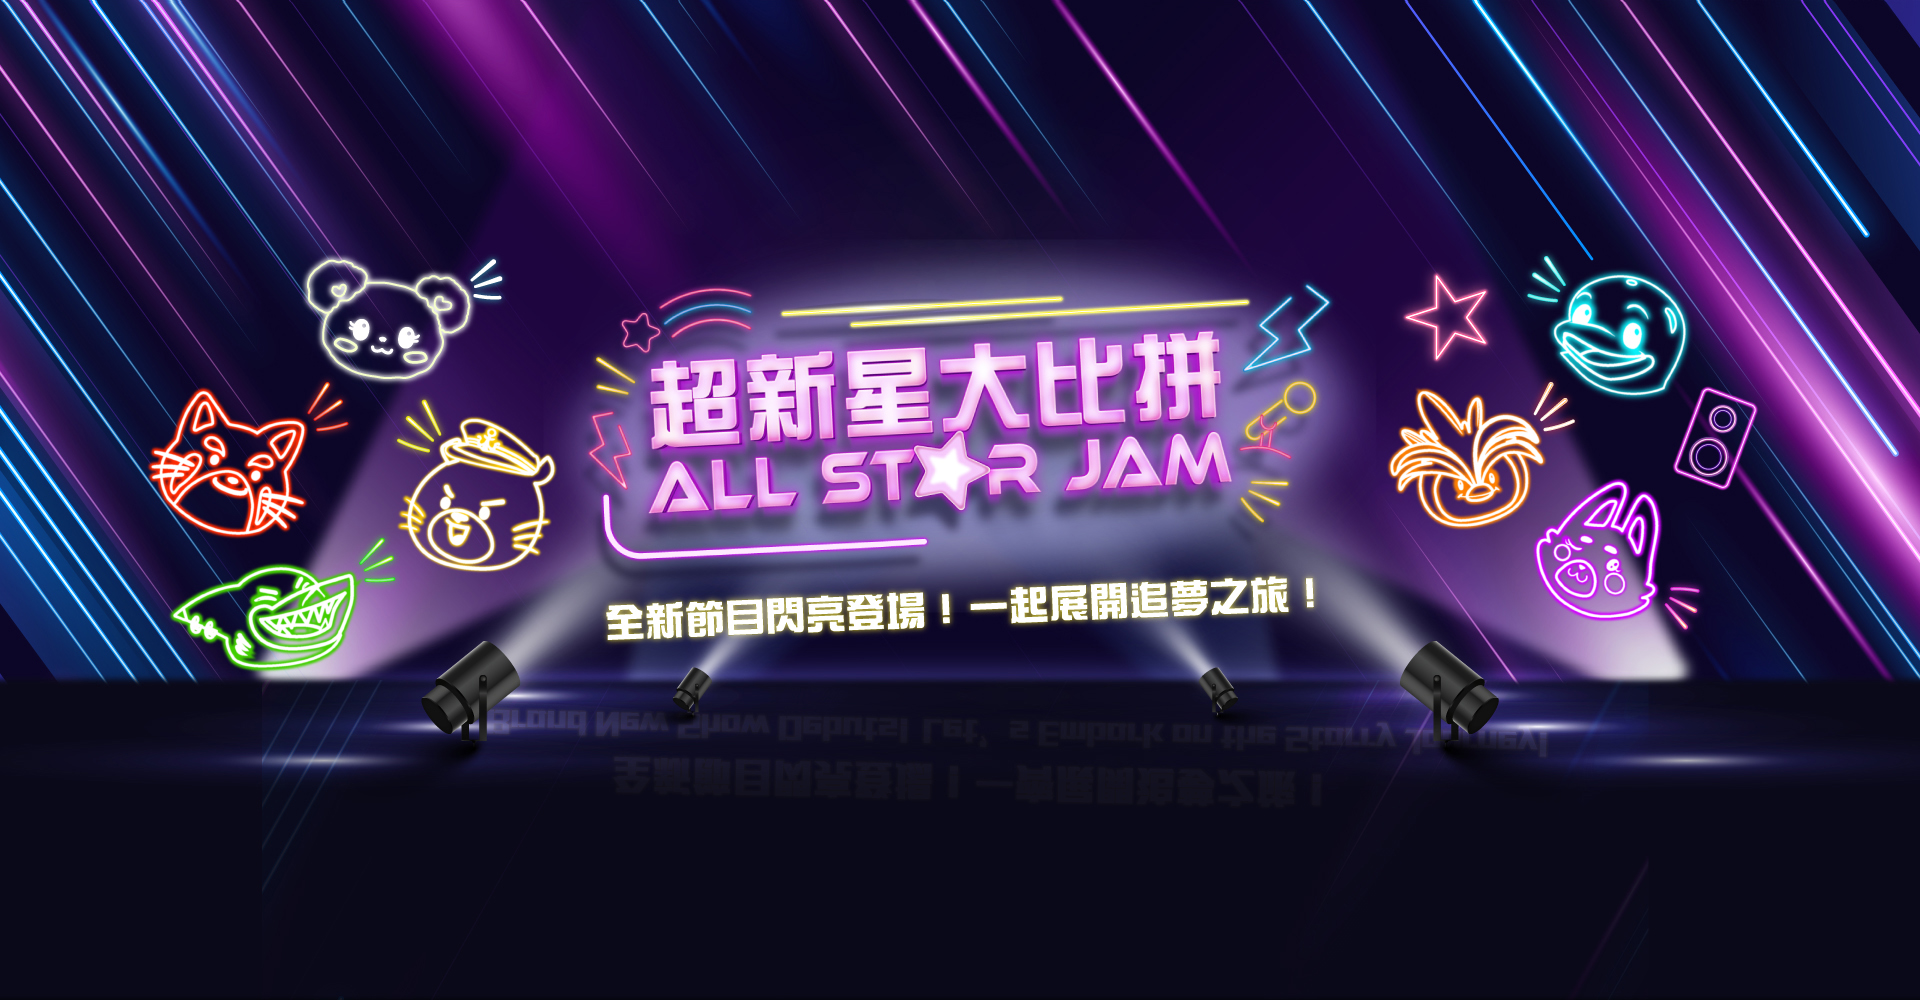 https://media.oceanpark.com.hk/files/s3fs-public/all-star-jam-desktop-banner-tc.jpg